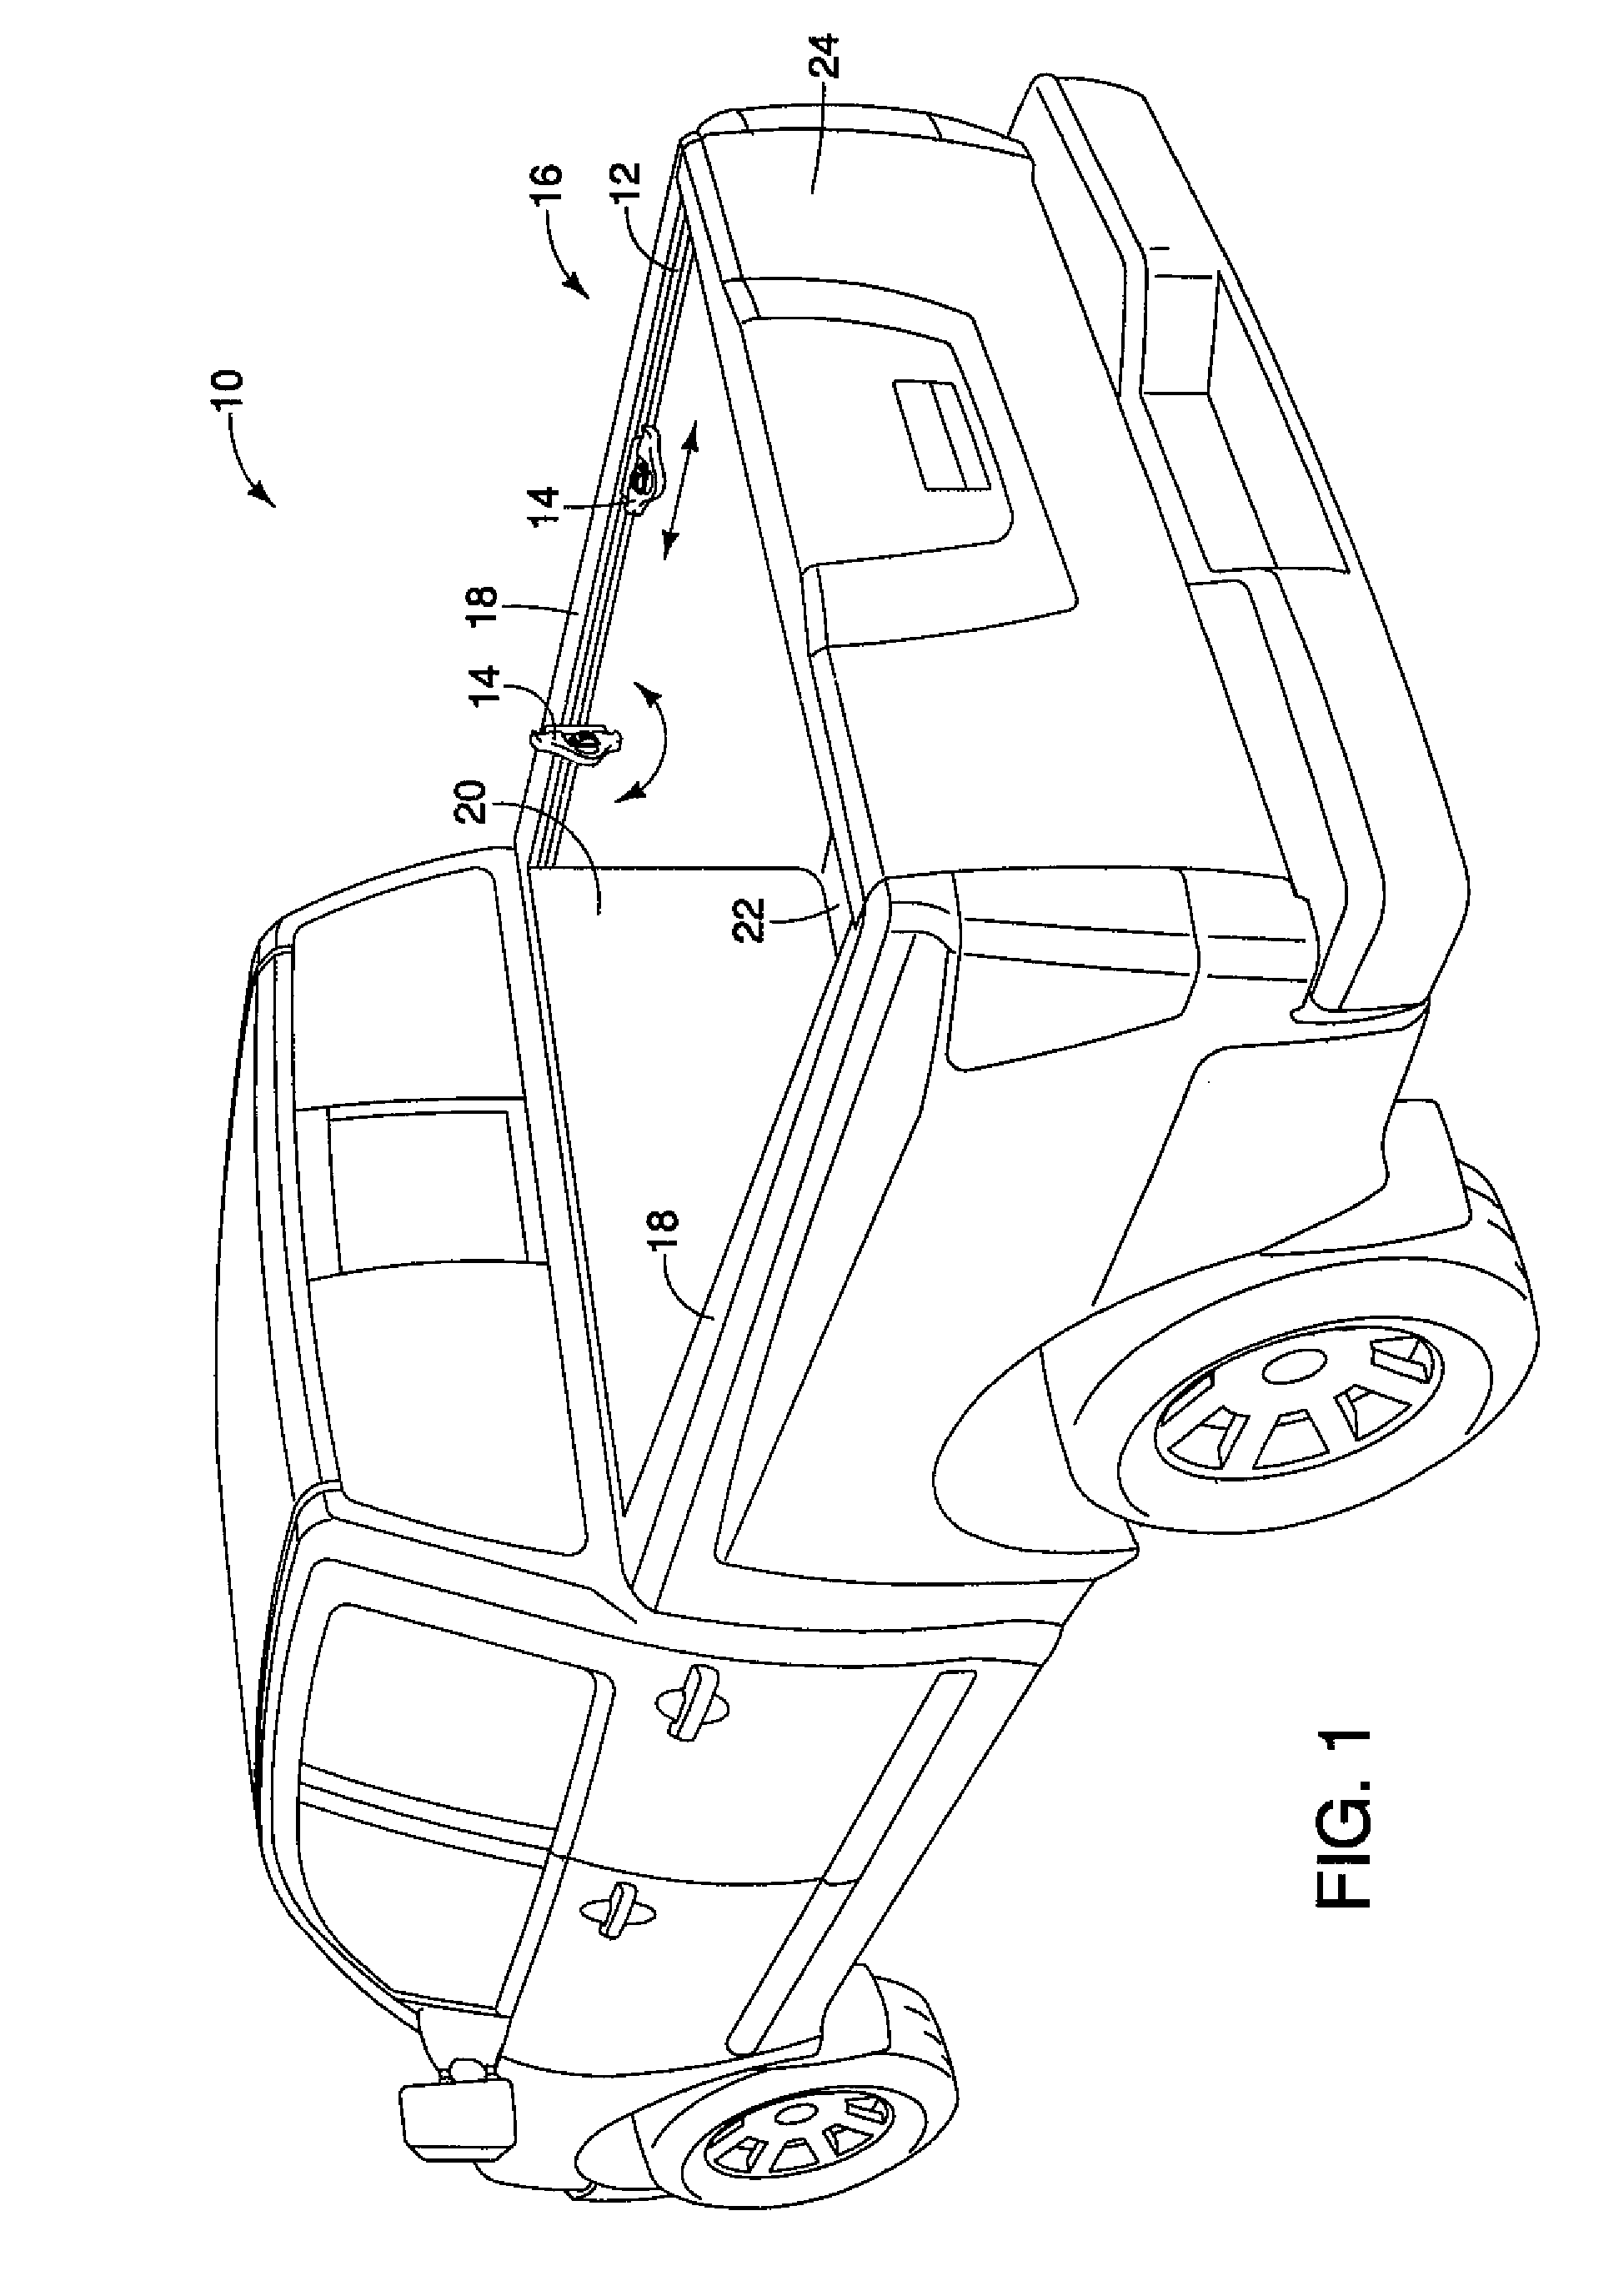 Vehicle cargo arrangement